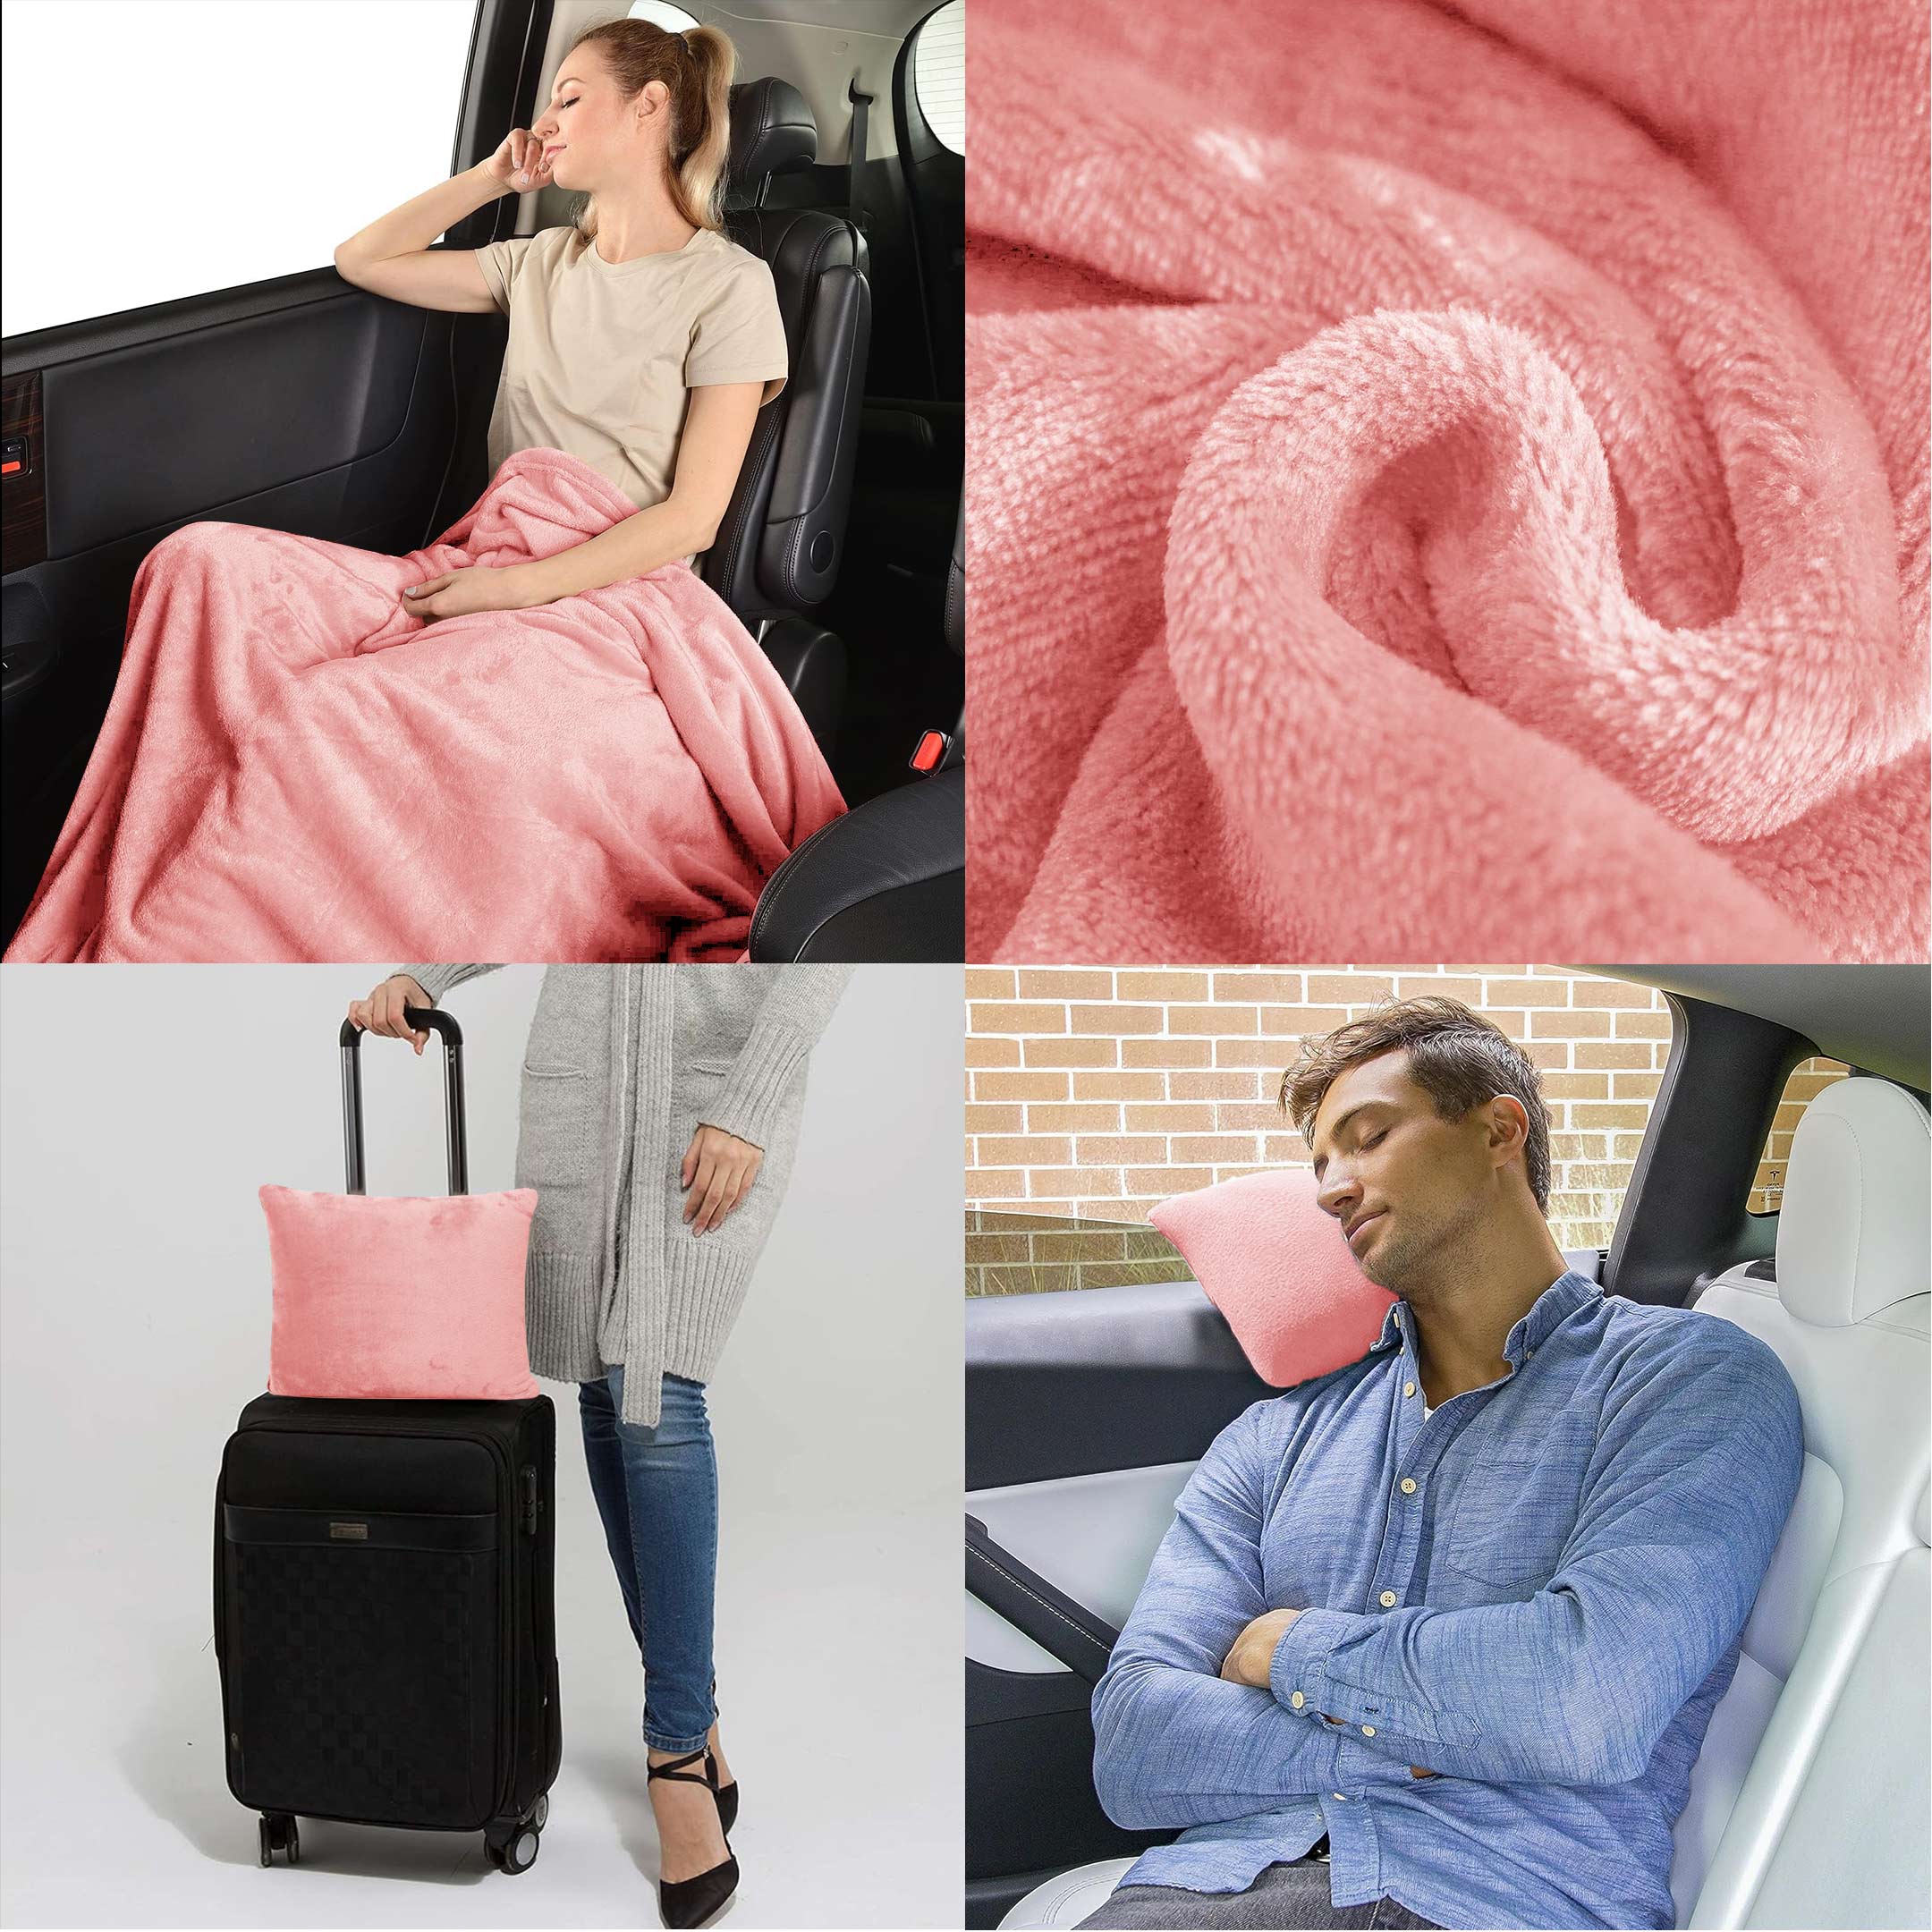 Portable Travel Blanket Pillow Dusky Rose